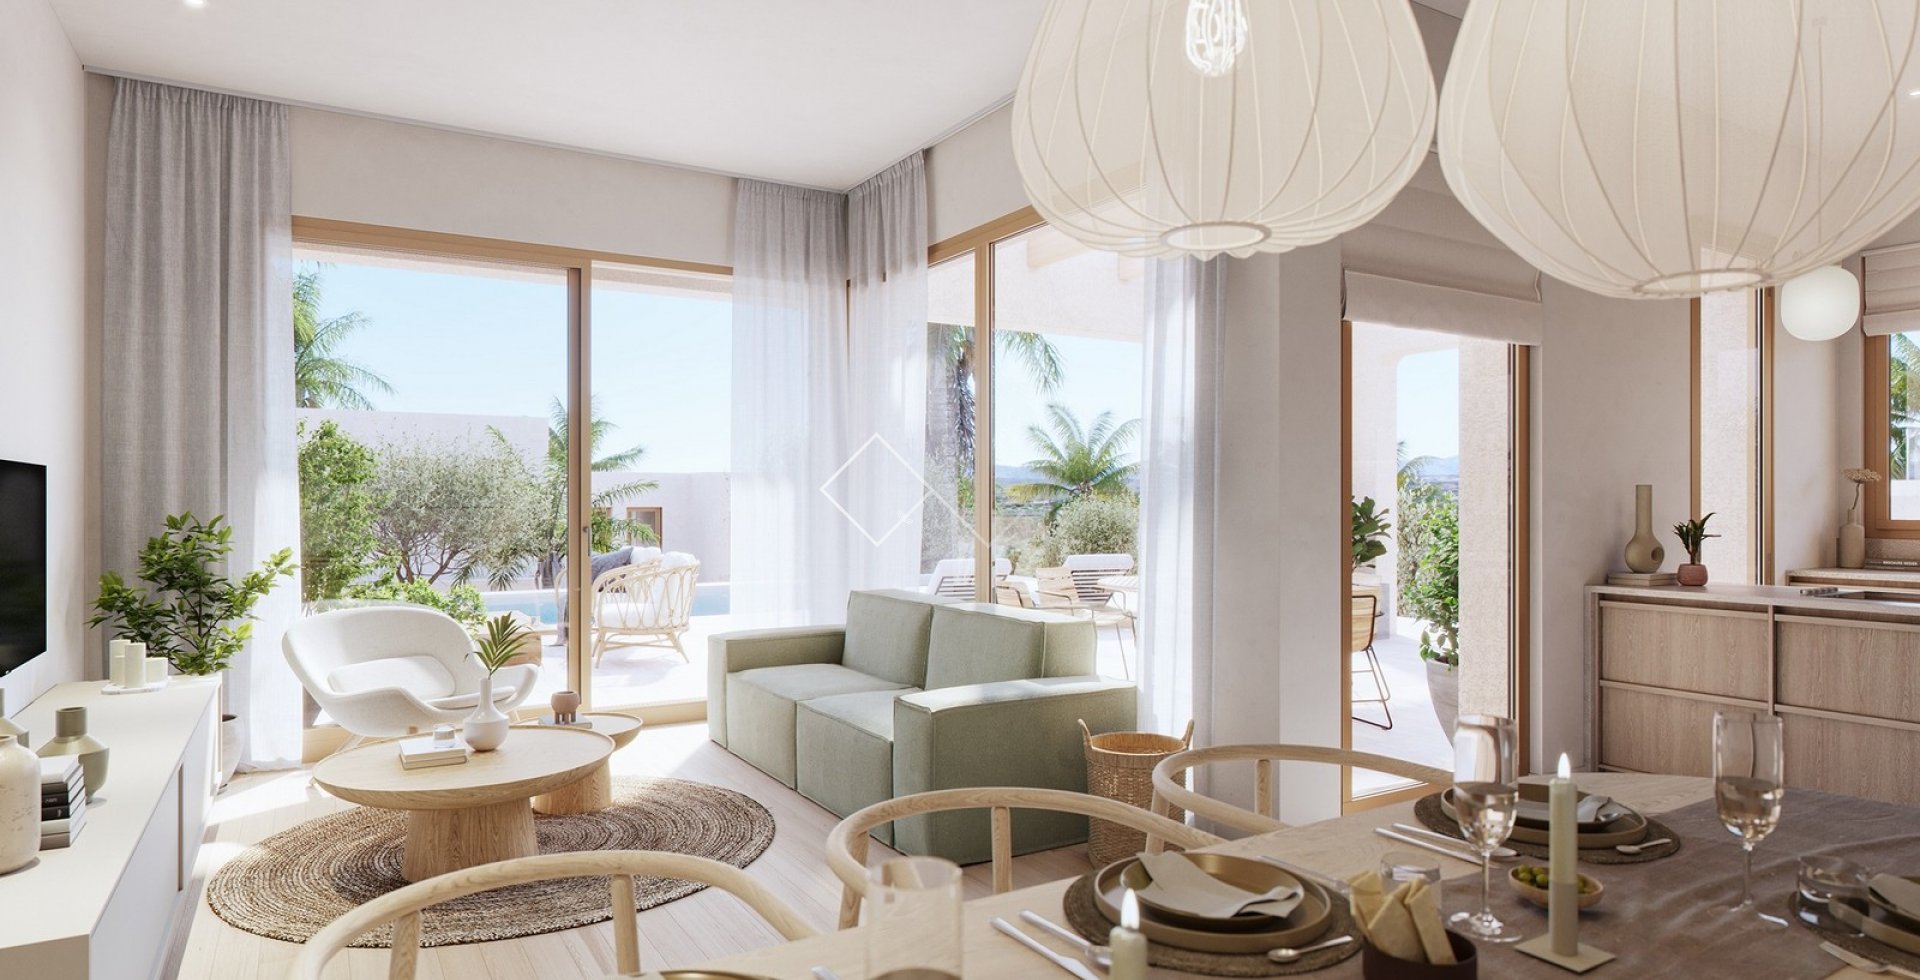 inside - New semi-detached Ibiza style villas for sale in Moraira